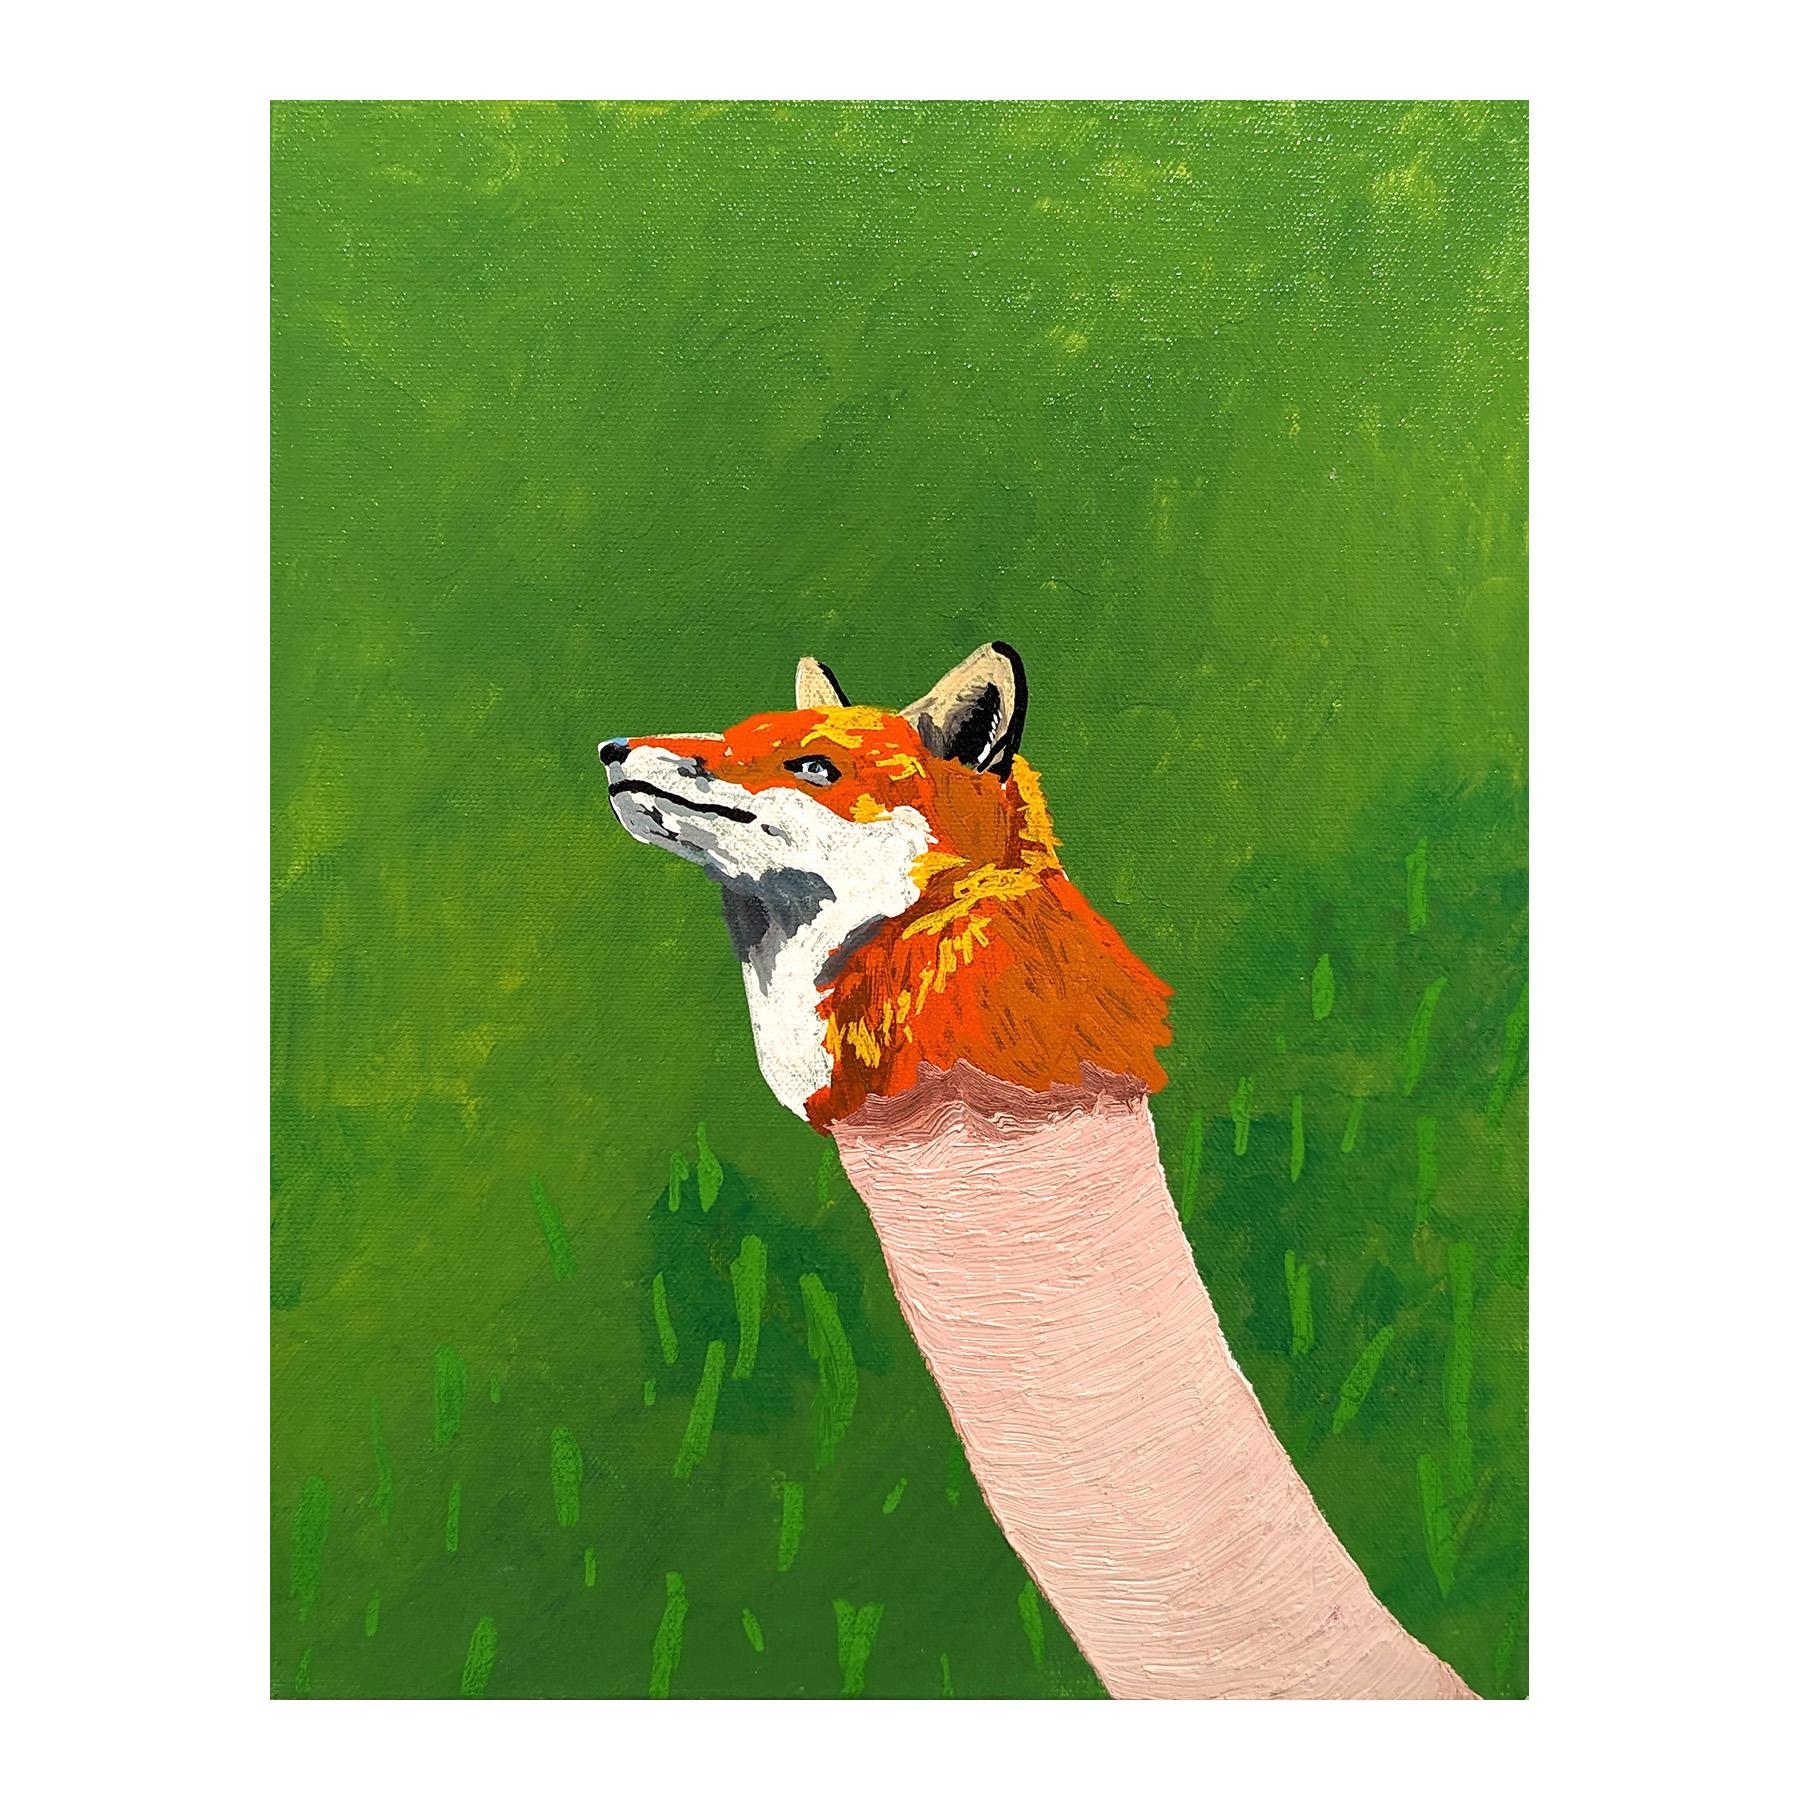 Du siehst gut aus wie eine Schlange im Gras Zeitgenössische Fuchsmalerei – Painting von Alex Paulus